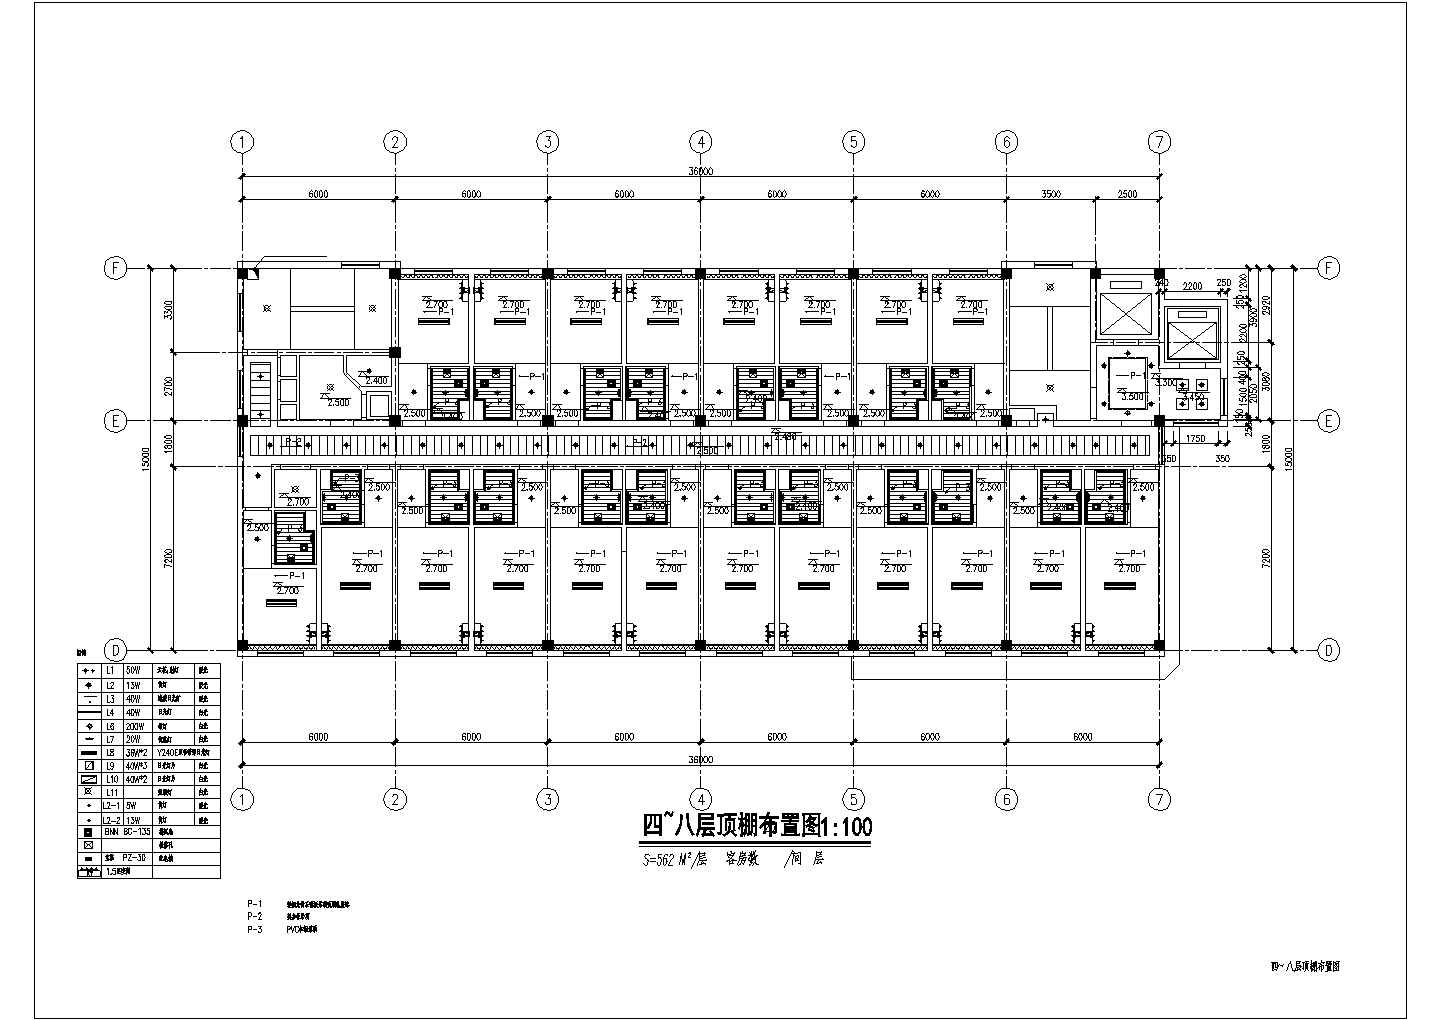 某宾馆装饰改造工程四~八层顶棚CAD详细节点布置图